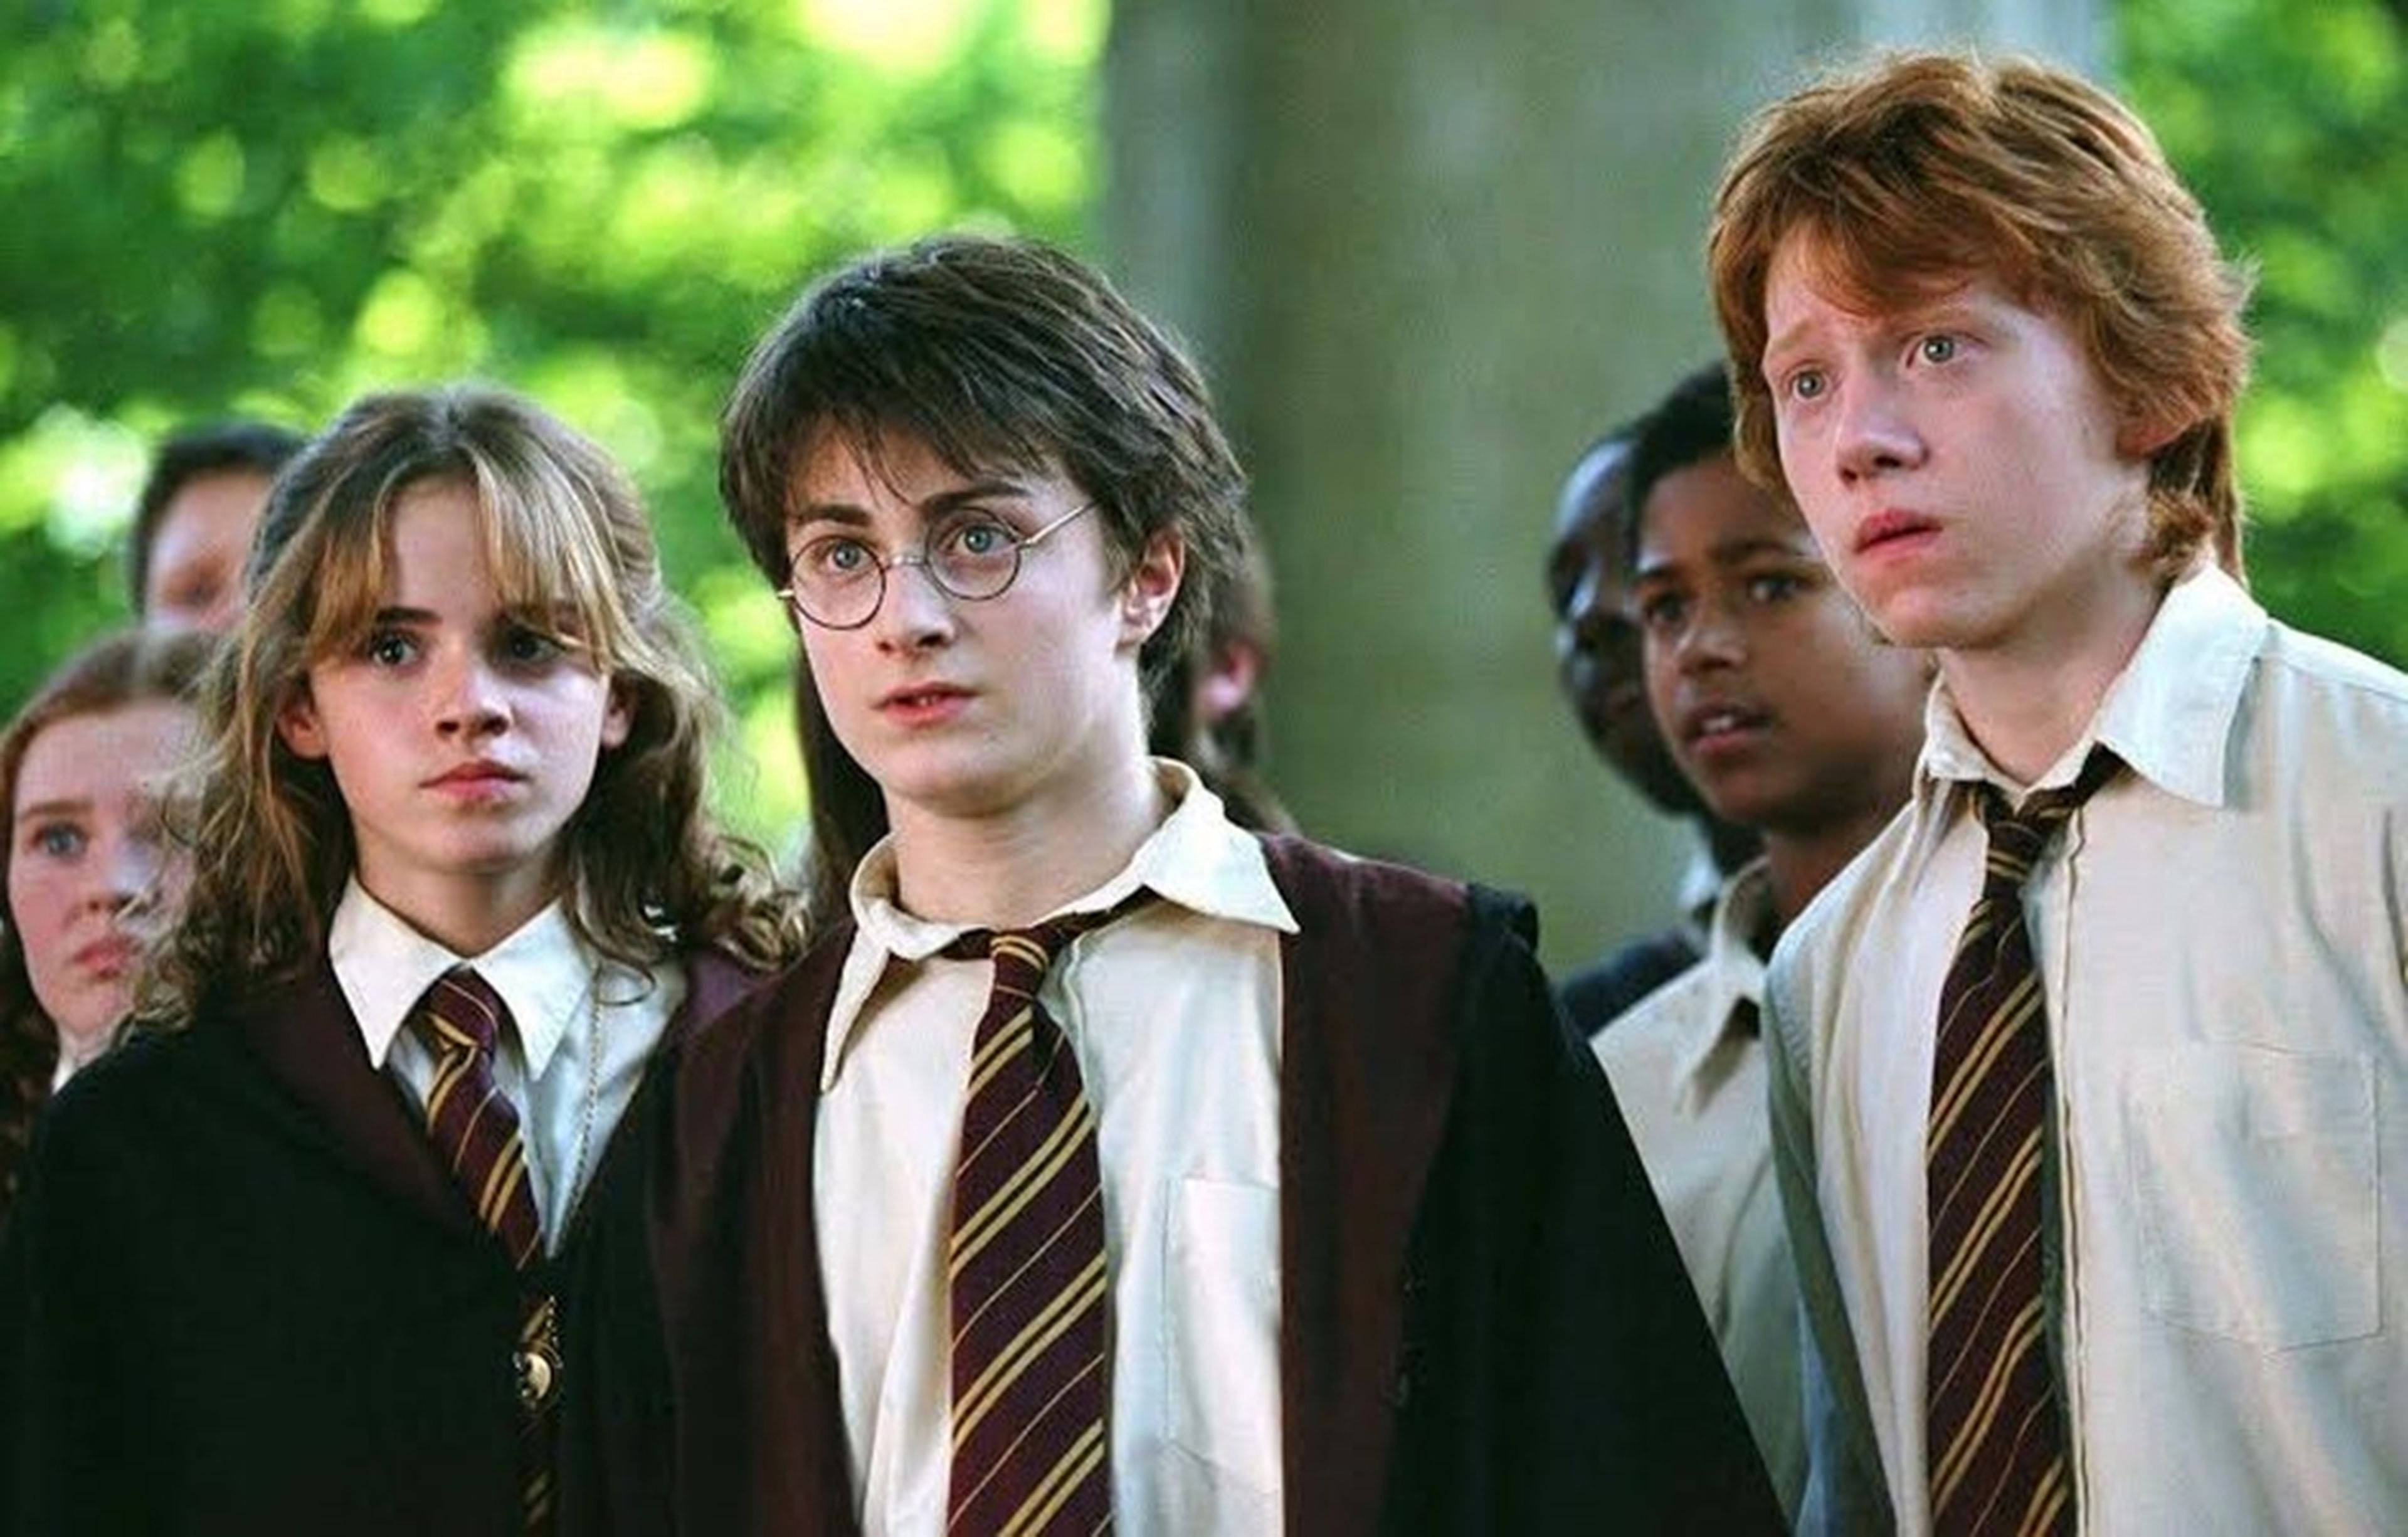 Instrumento Hablar con almuerzo Curiosidades de los uniformes de Hogwarts en Harry Potter que seguramente  desconoces | Hobby Consolas